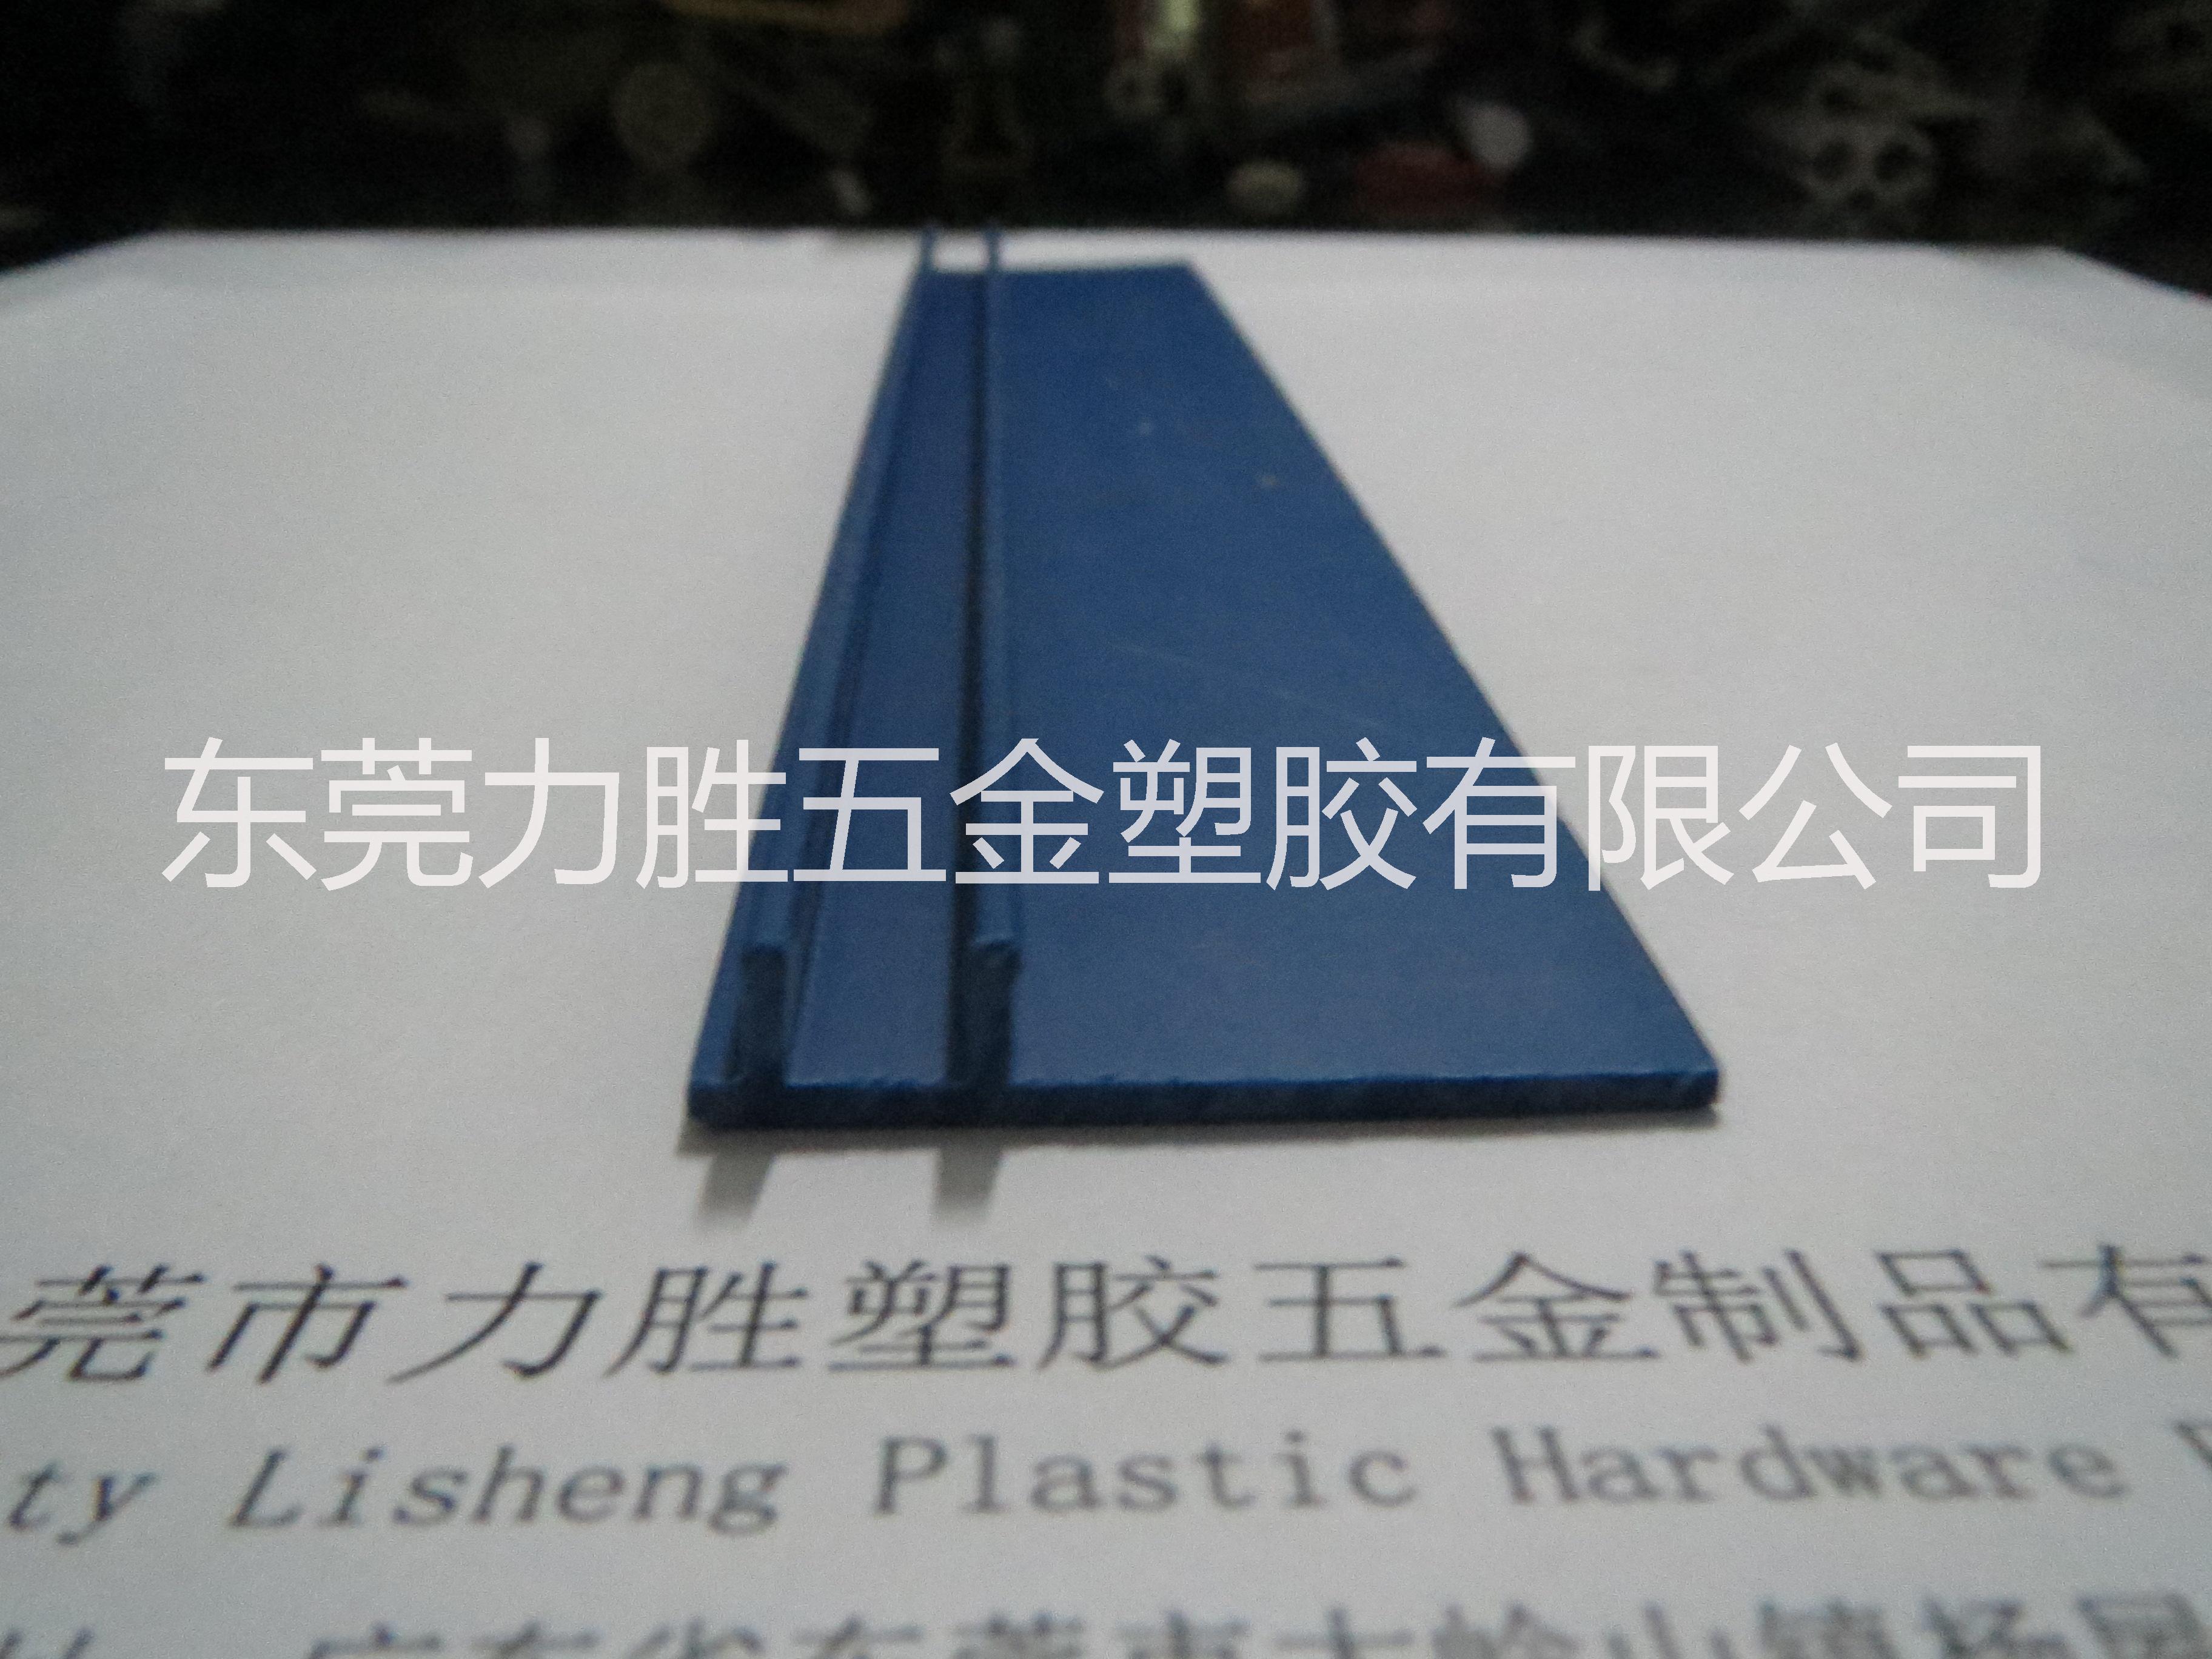 厂家热销pvc塑胶异型管材 专业挤塑加工 承接定制生产异型材